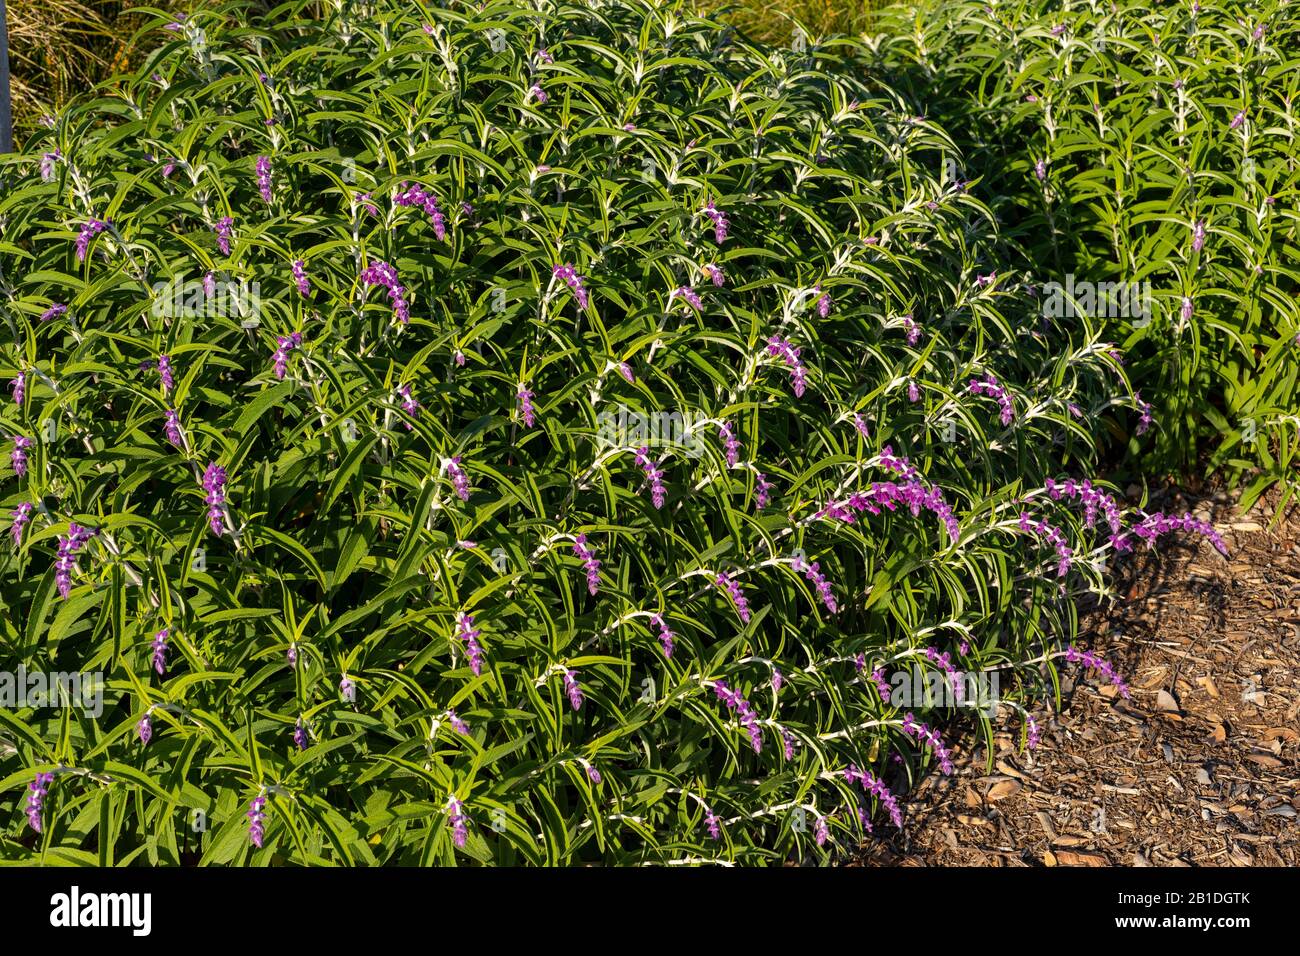 Die Mexican Bush sage (Salvia leucantha) ist eine Dürre-tolerante Pflanze. Hier ist es in goldenem Stundenlicht mit vollen samtigen violetten Blähungen dargestellt. Stockfoto